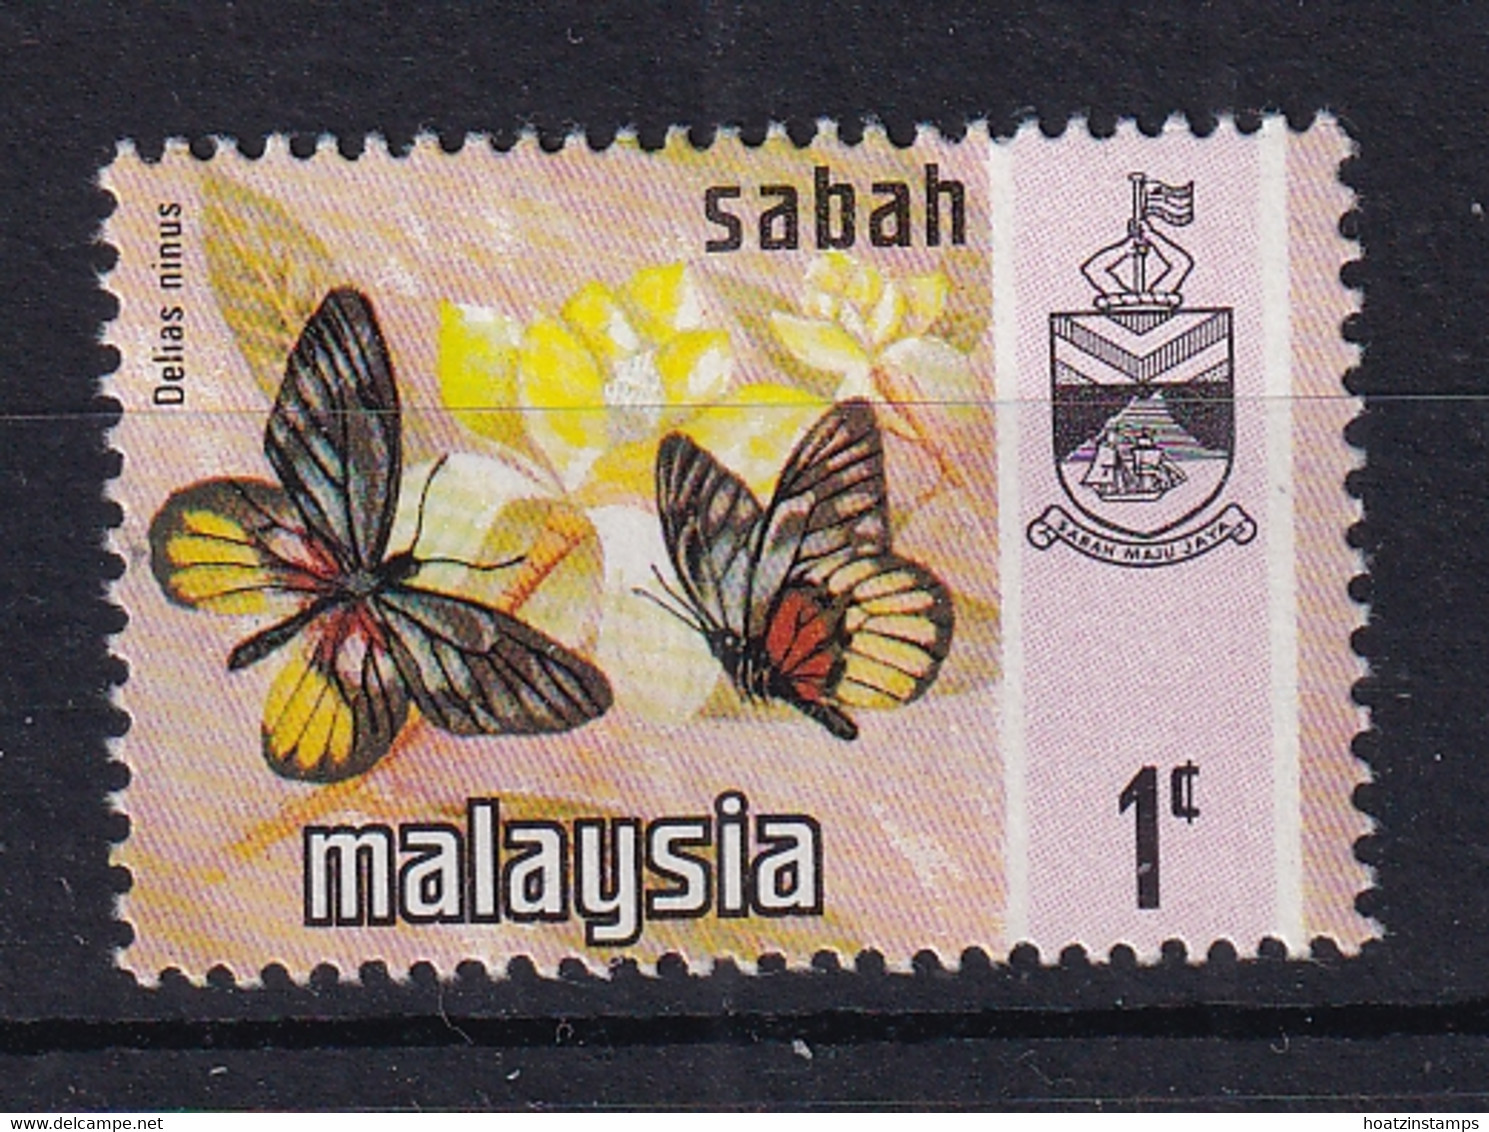 Malaya - Sabah: 1971/78   Butterflies   SG432    1c  [Litho]  MNH - Sabah